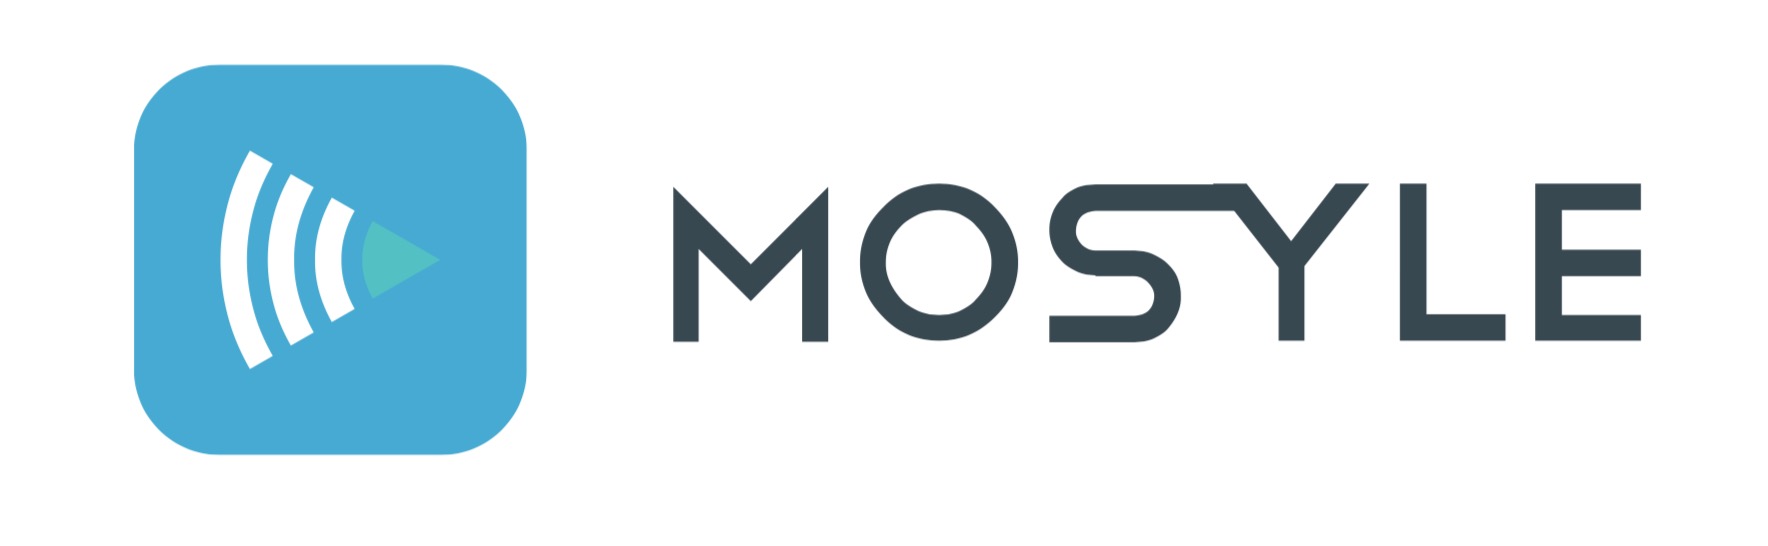 30 безкоштовних ліцензій на Mosyle MDM для віддаленого адміністрування парку техніки Apple